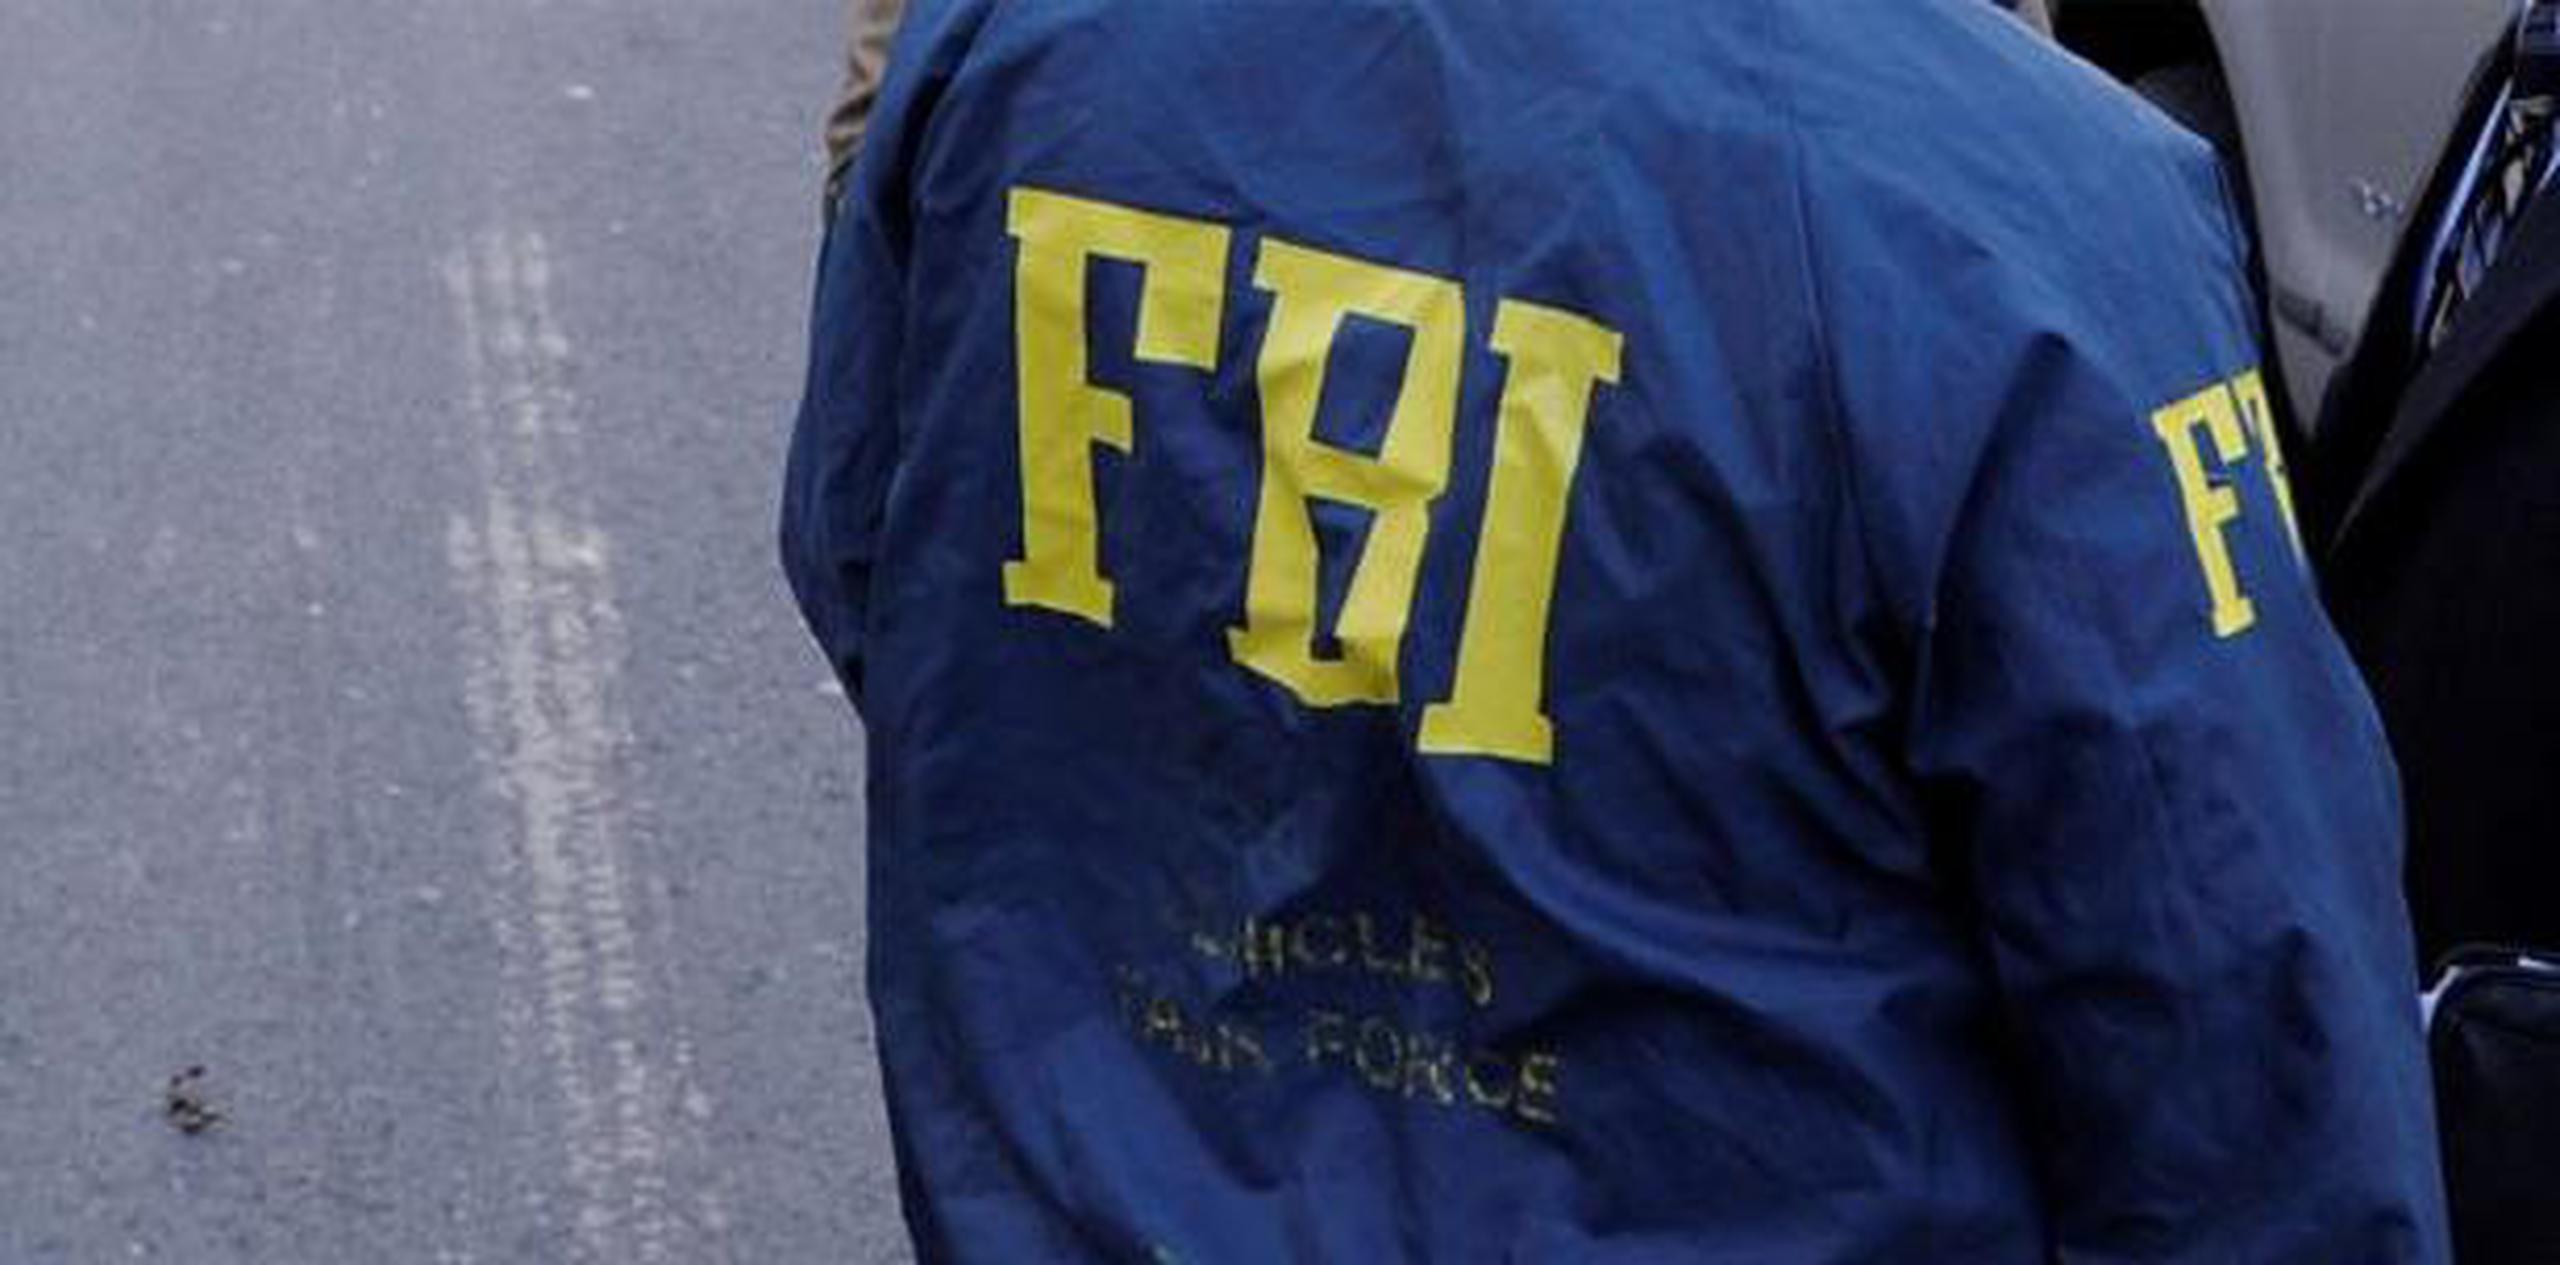 El galeno fue acusado en una de las tres investigaciones del FBI contra cientos de personas que defraudaron a la aseguradora AFLAC. (Archivo)